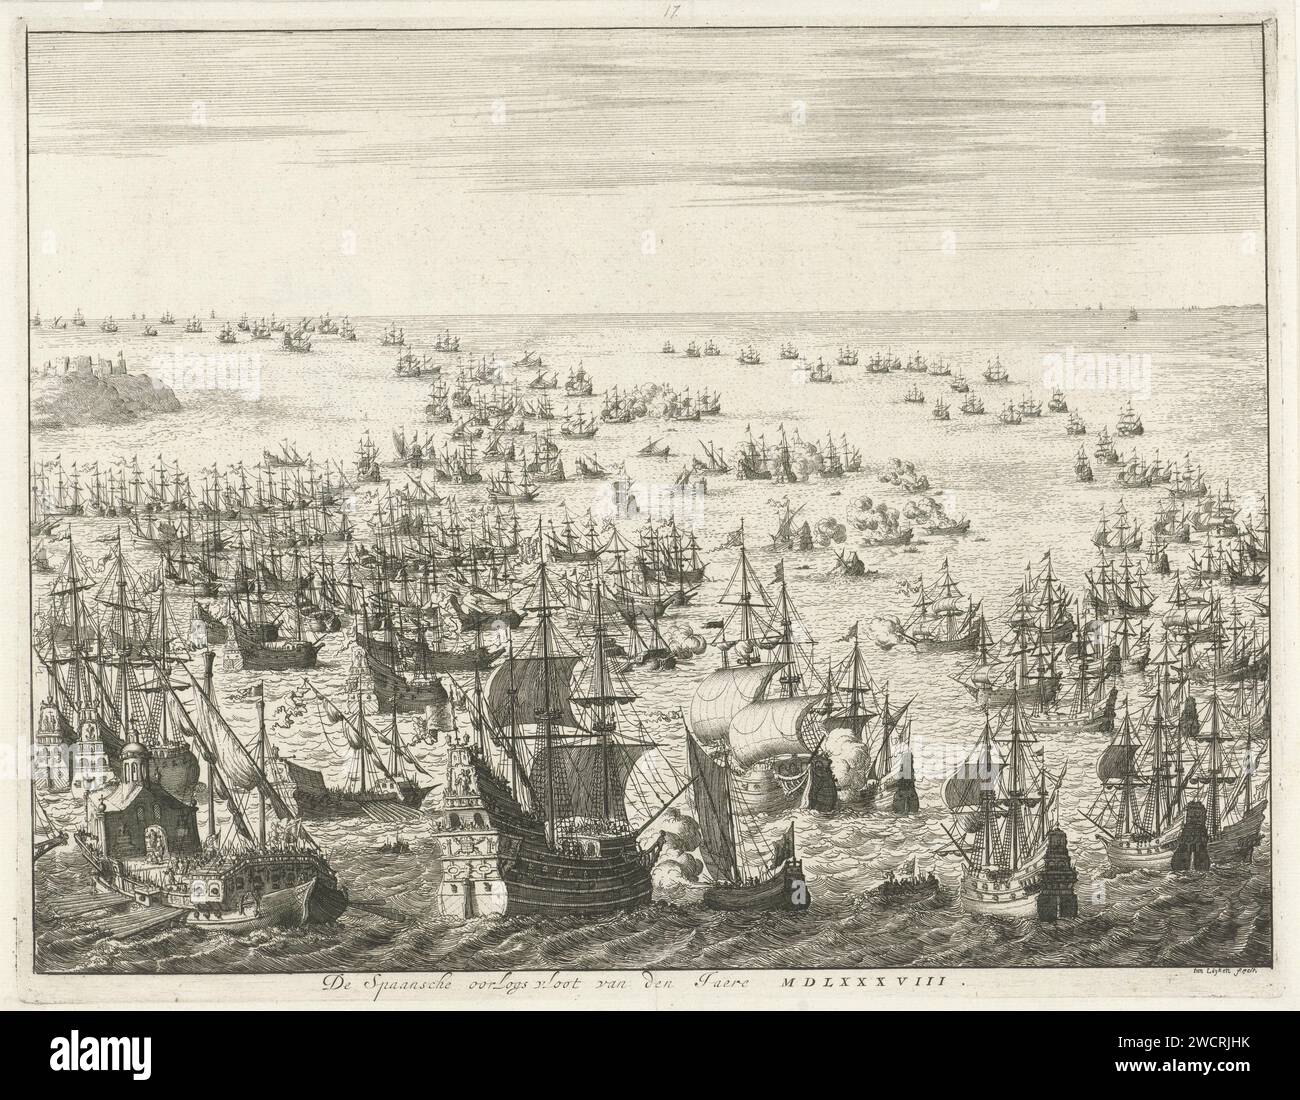 Chute de l'Armada espagnole, 1588, Jan Luyken, 1679 - 1684 Imprimer chute de l'Armada espagnole ou flotte invincible, entre le 31 juillet et le 12 août 1588. Bataille maritime entre les flottes espagnole et anglaise et néerlandaise combinées dans le canal. Au premier plan, une grande frégate espagnole est tirée par un petit navire hollandais avec la bannière de la ville de Leiden, un Galei sur la gauche. Bataille de gravure sur papier Amsterdam (+ force navale) Manche Banque D'Images